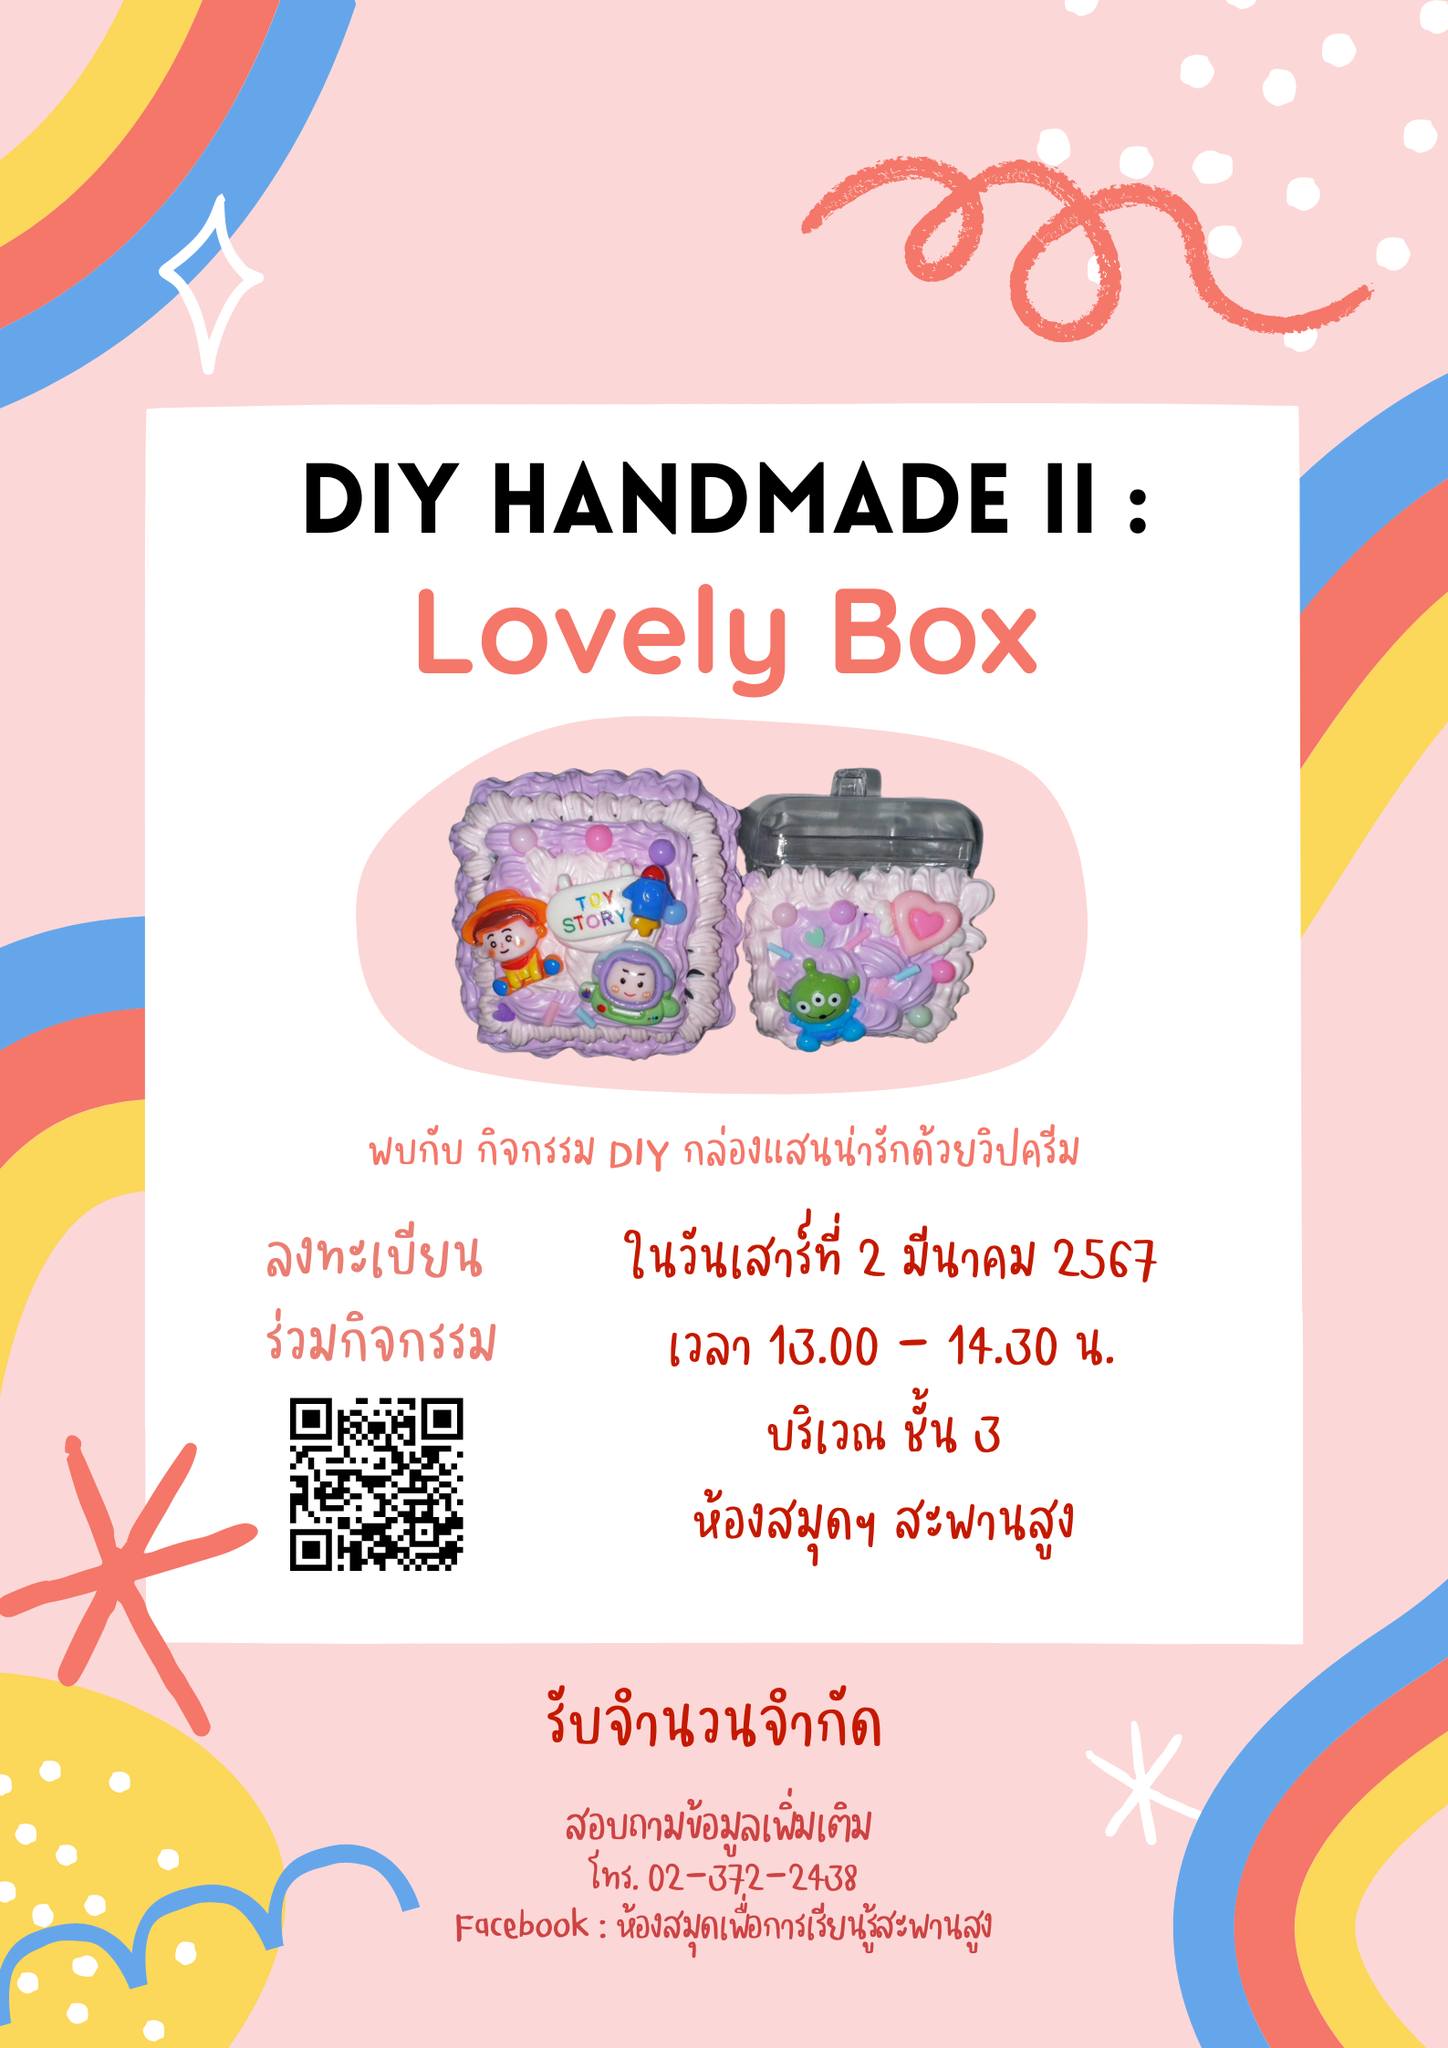 กิจกรรม "DIY HANDMADE II : Lovely Box"